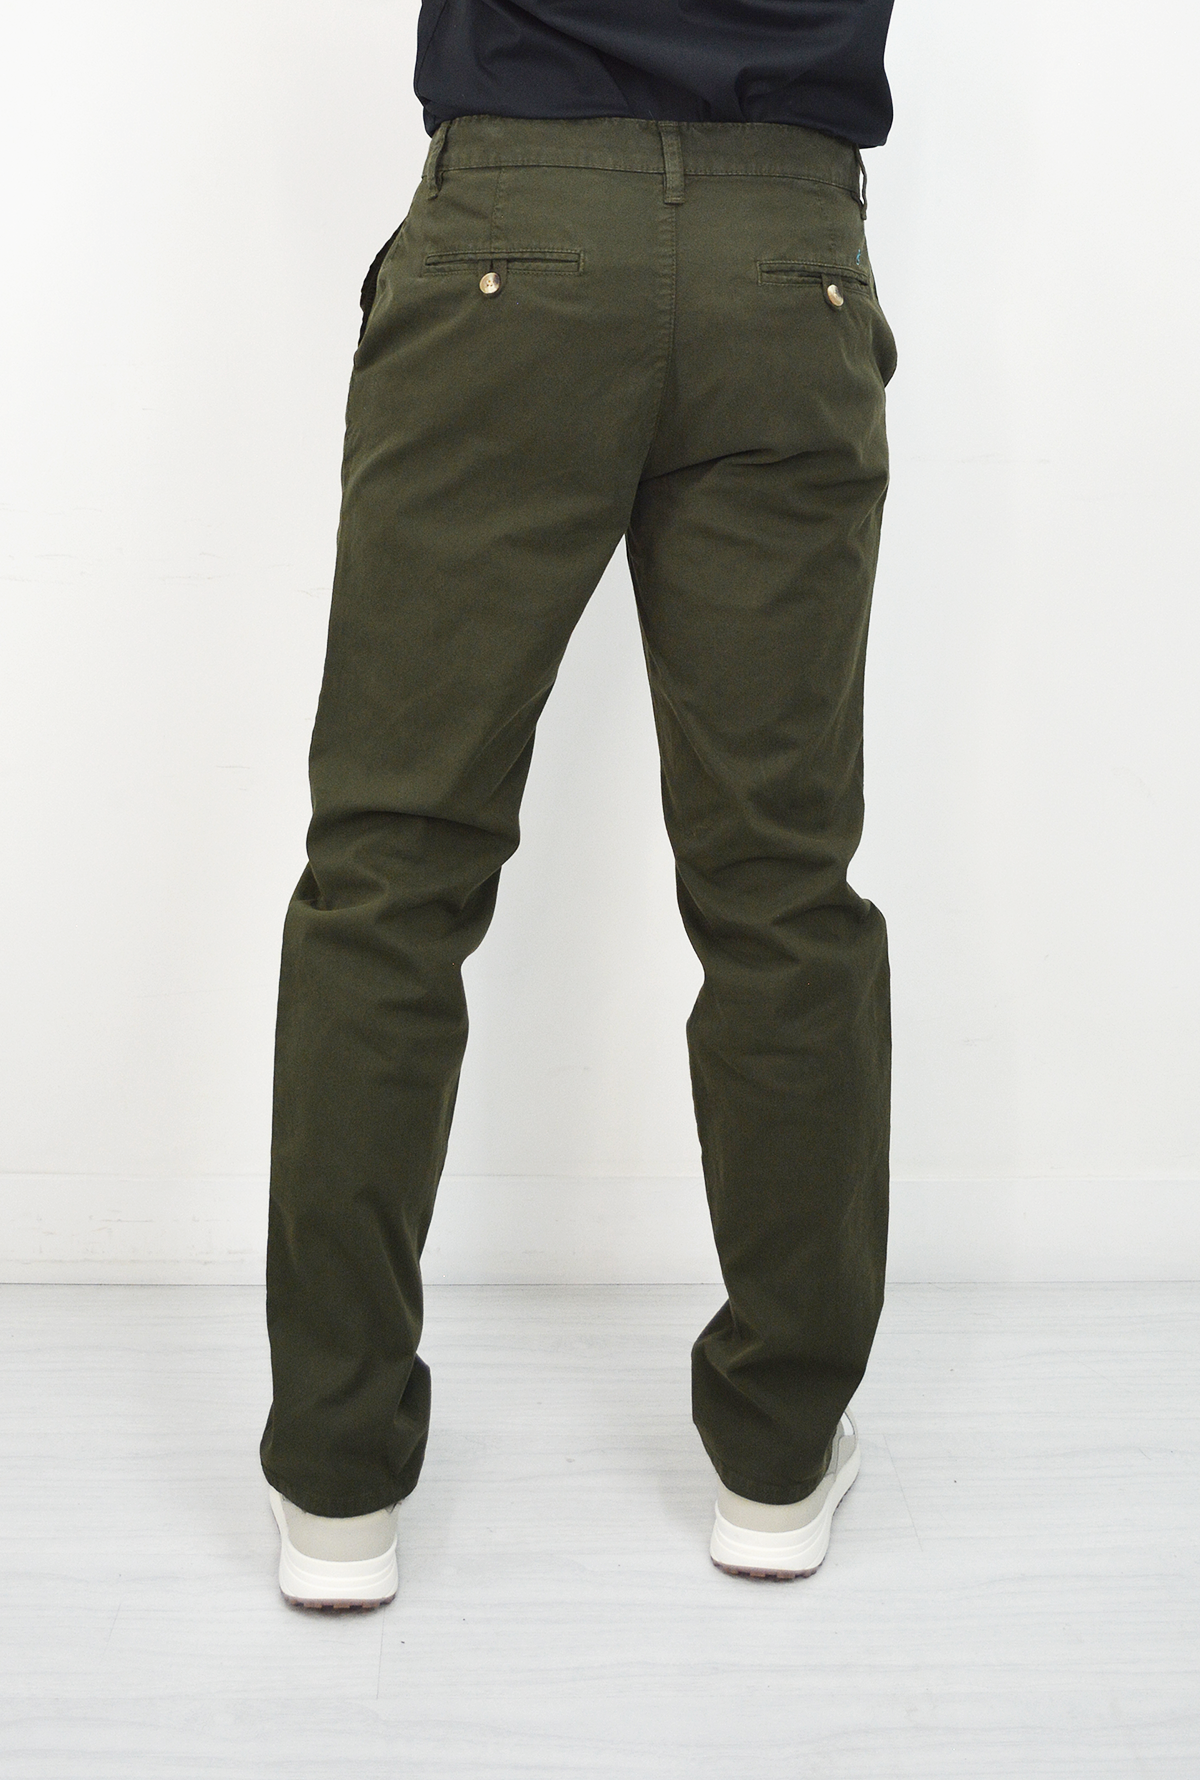 Pantalón Verde Militar  Para Hombre DPC1027